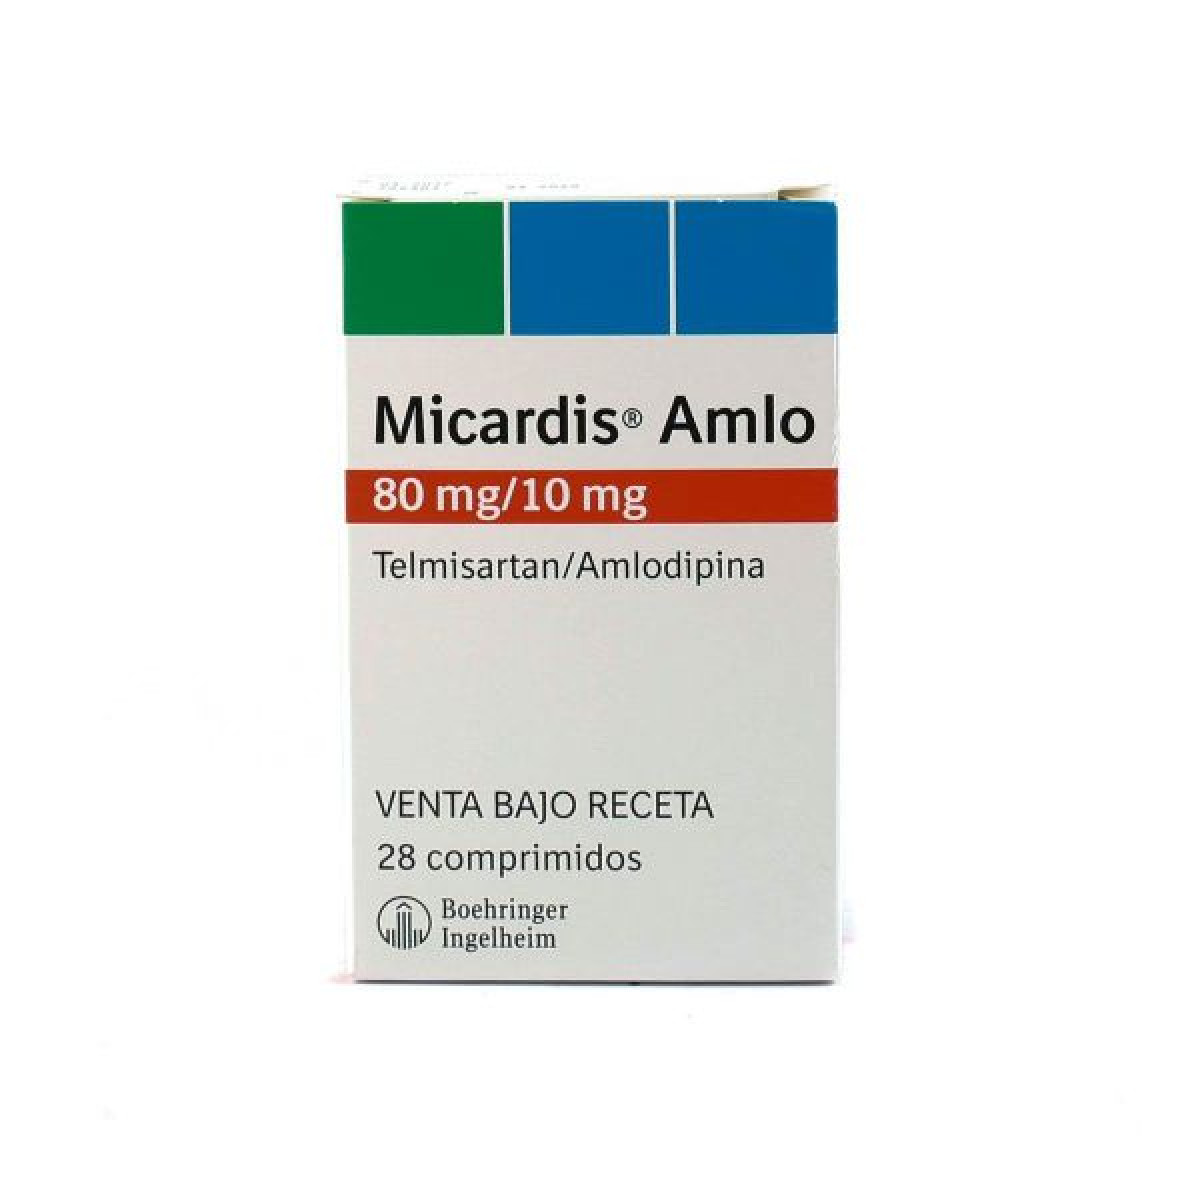 MICARDIS AMLO 80/10 MG X 28 COMP